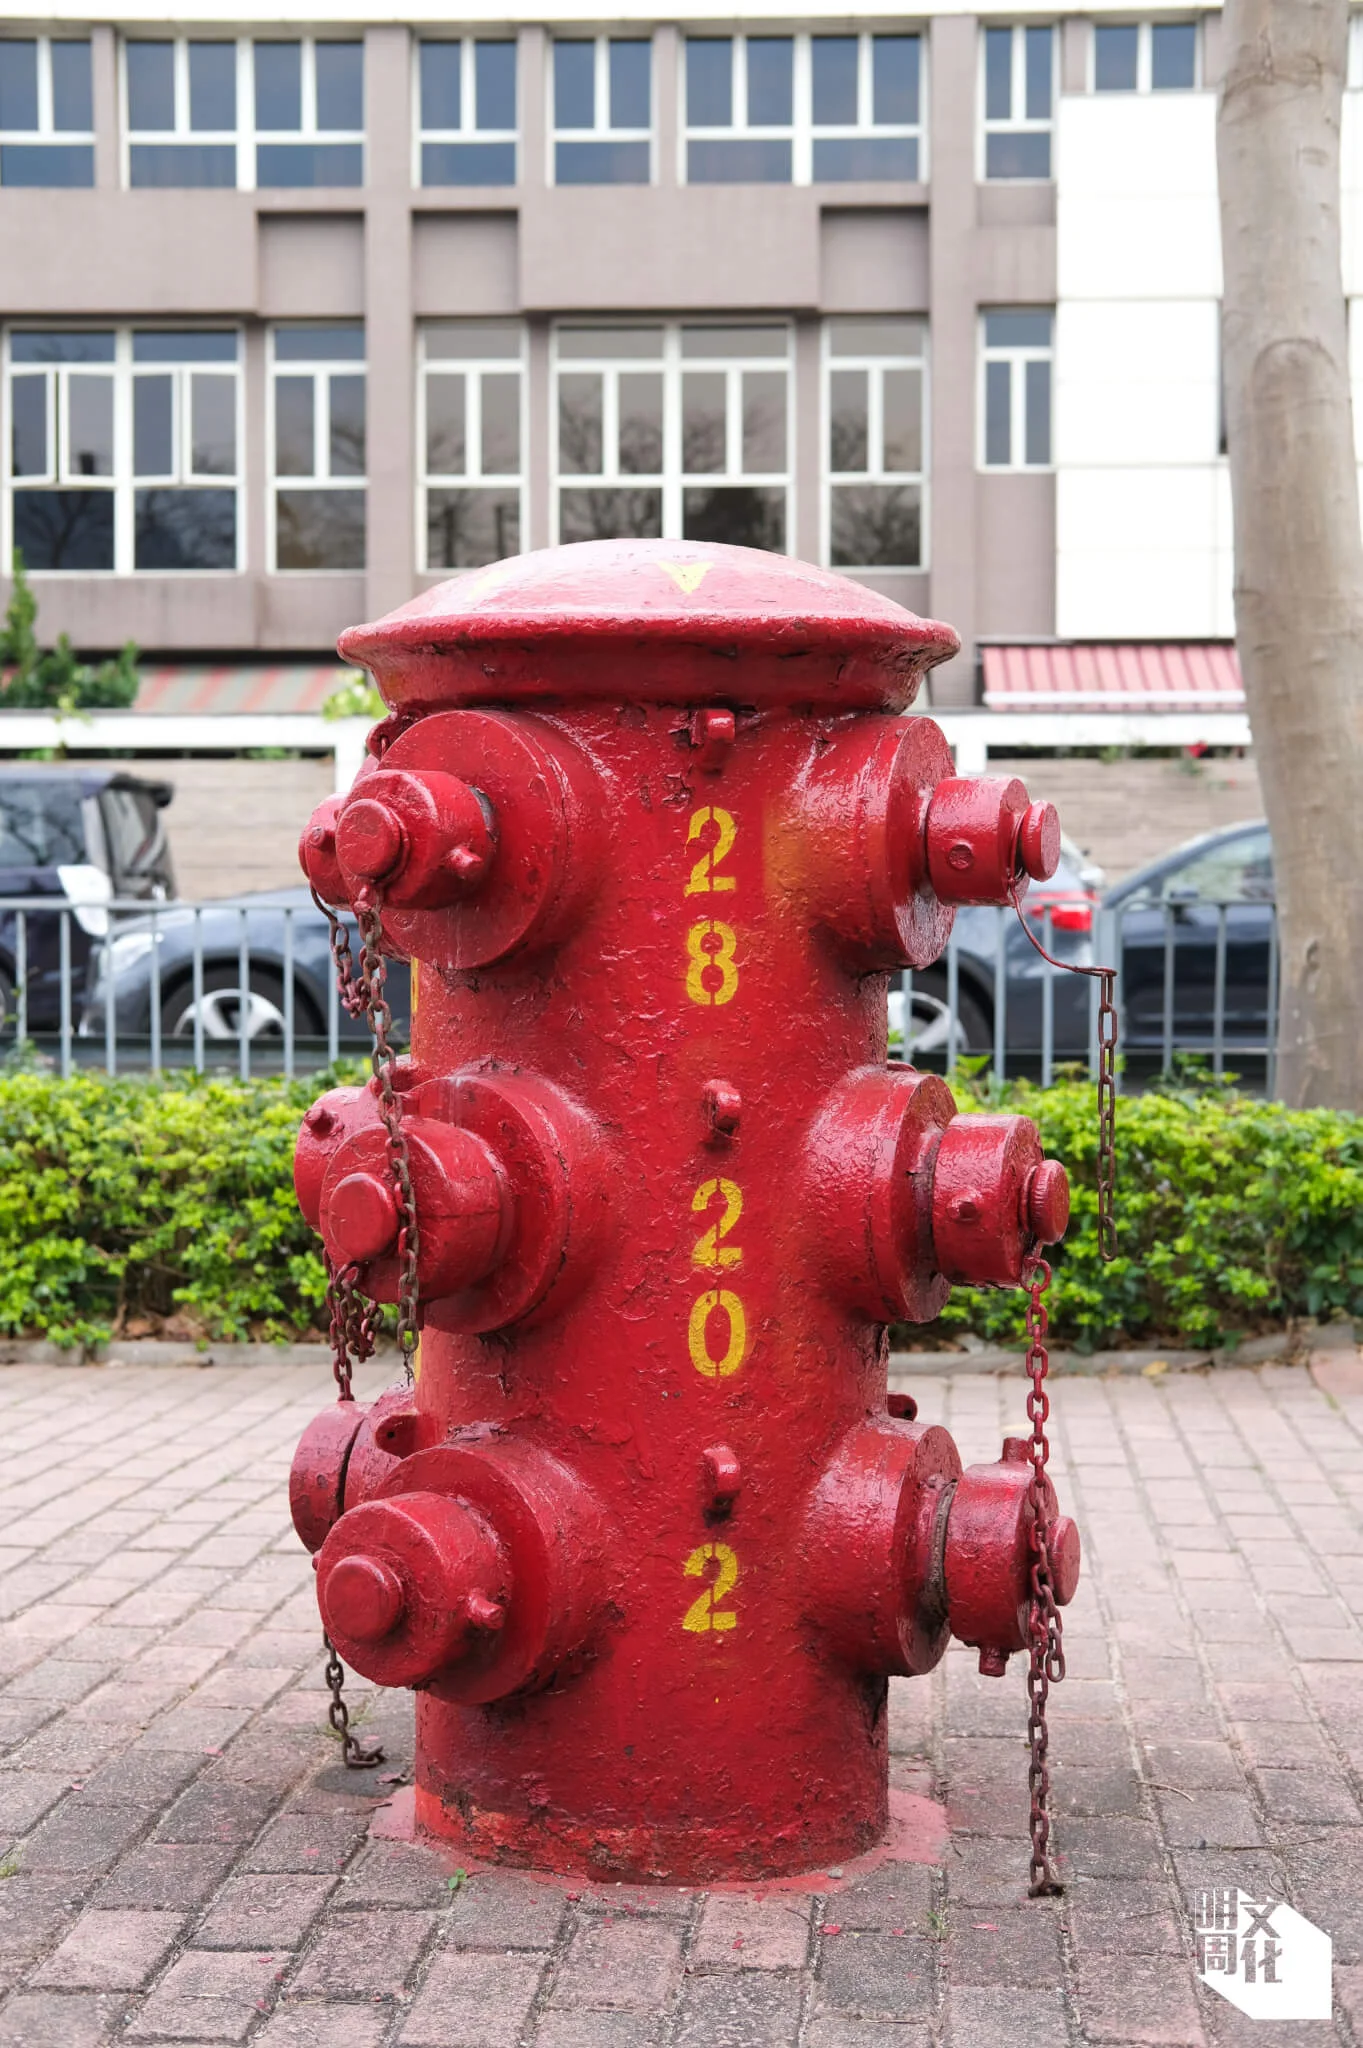 全港只有約十多個重型消防栓，多設於九龍區，少量設於港島區。